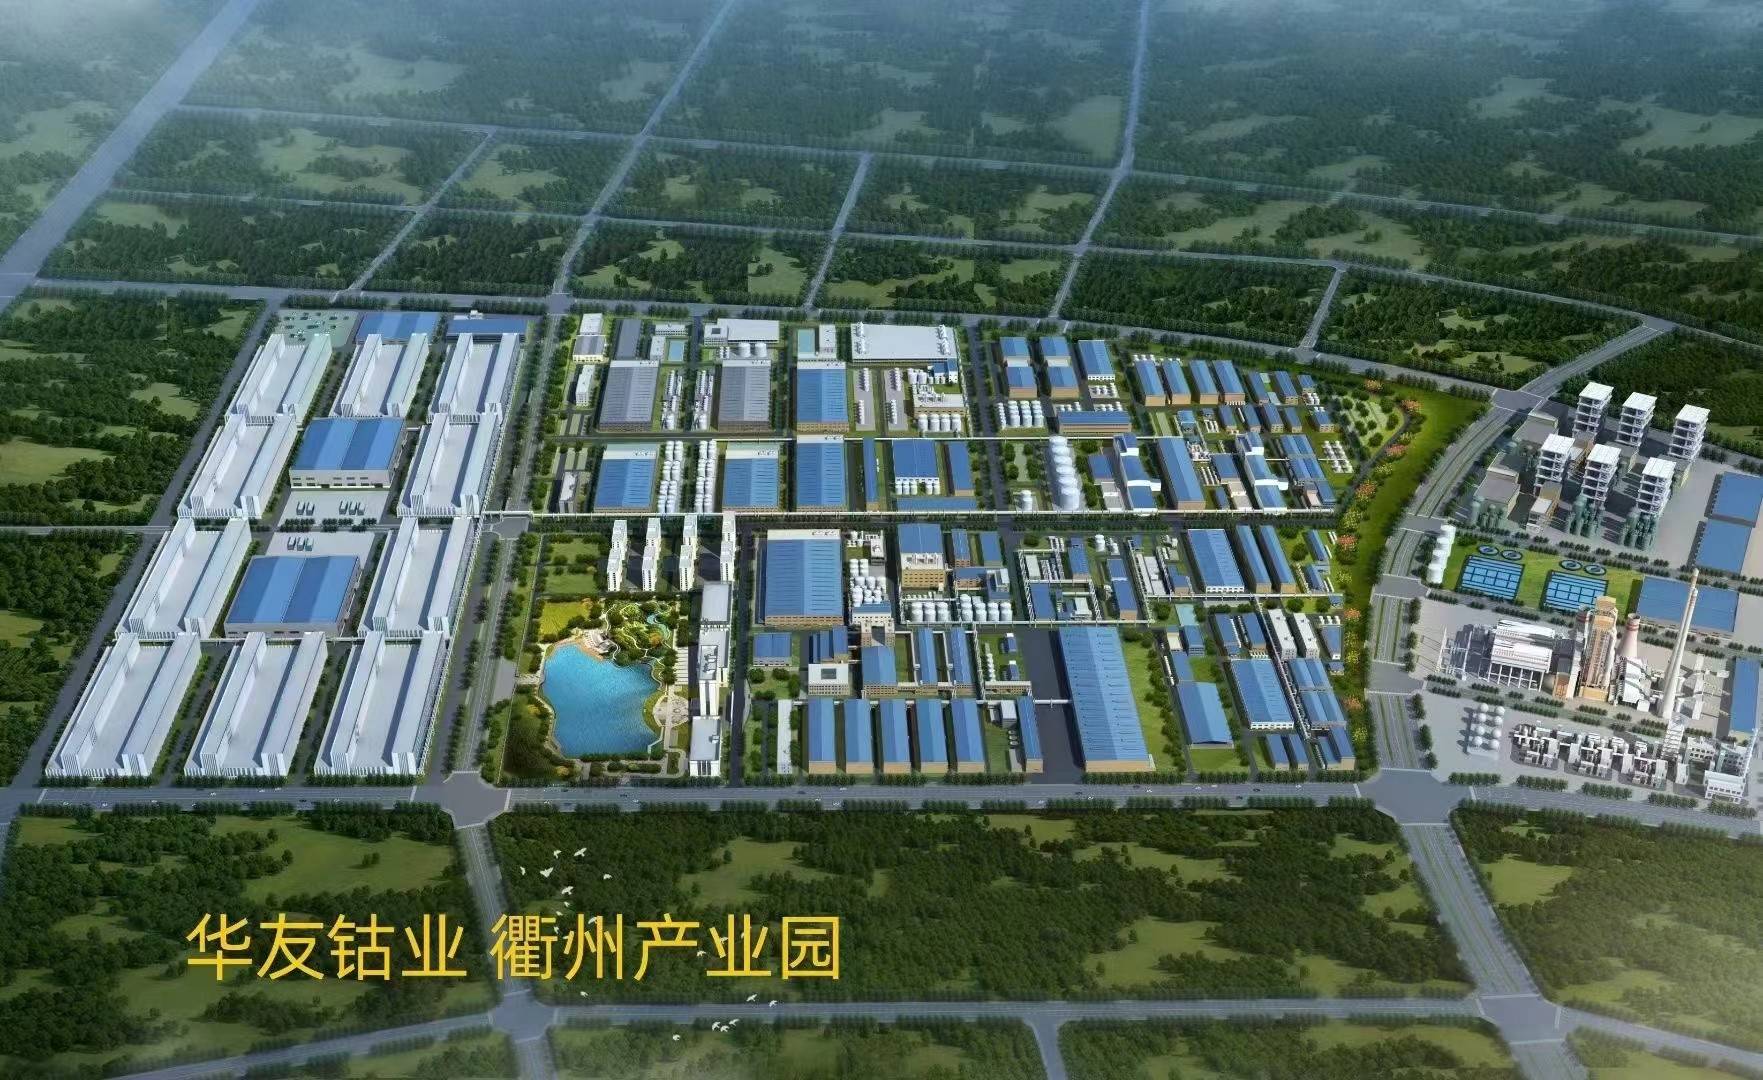 锂电材料有限公司投资,是衢州历史上单体投资最大的先进制造业项目,被